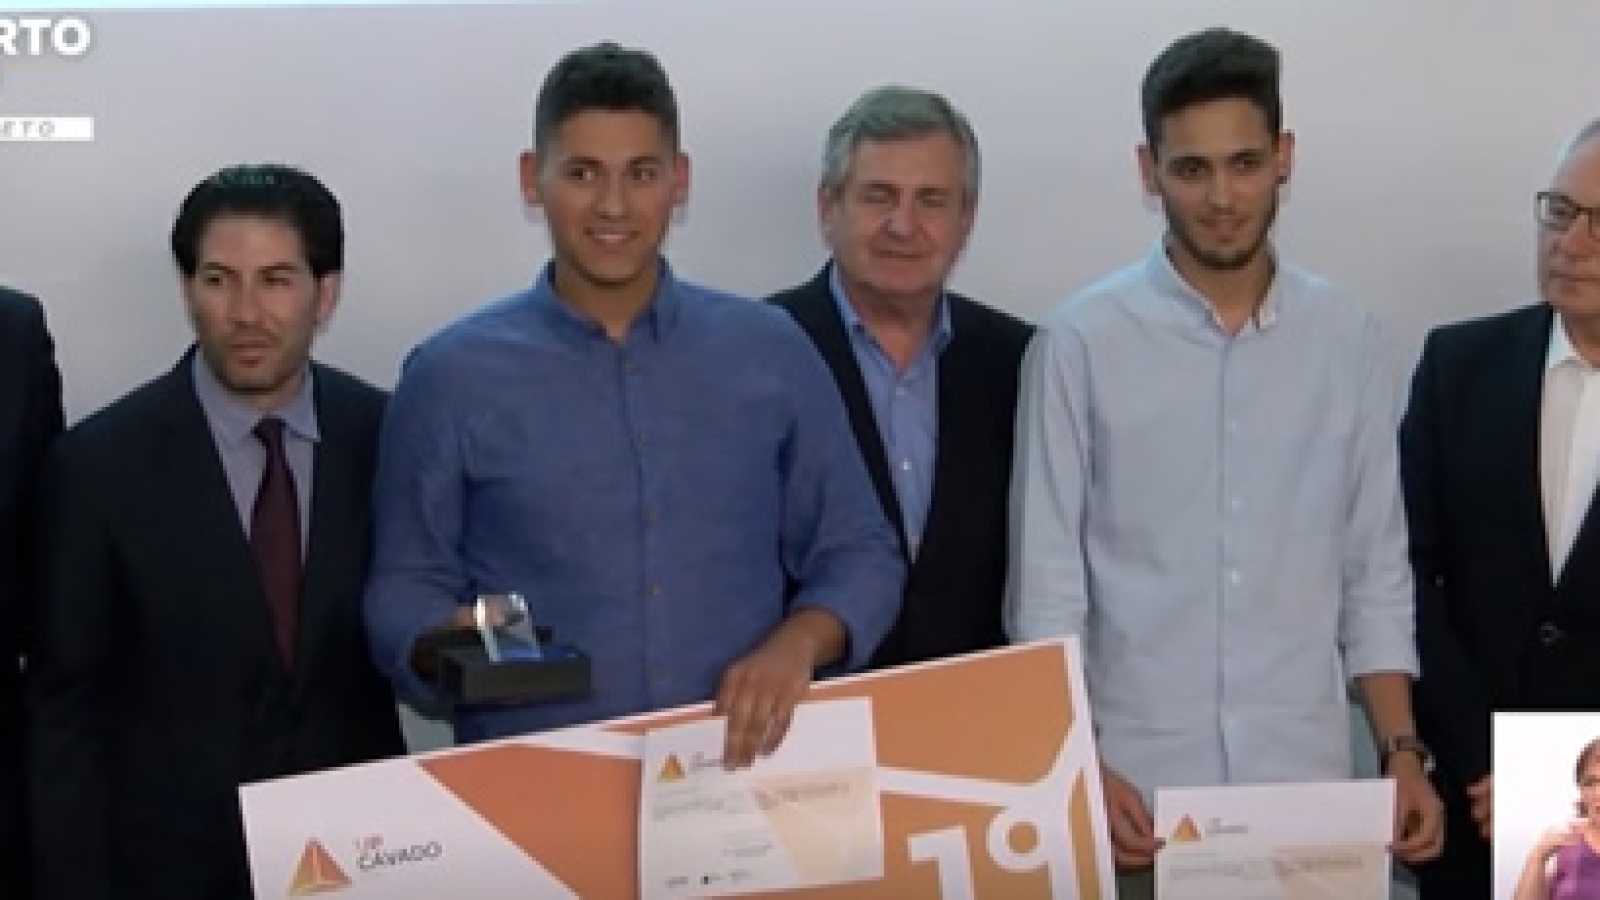 Escola portuguesa vence concurso transfronteiriço de ideias de negócios